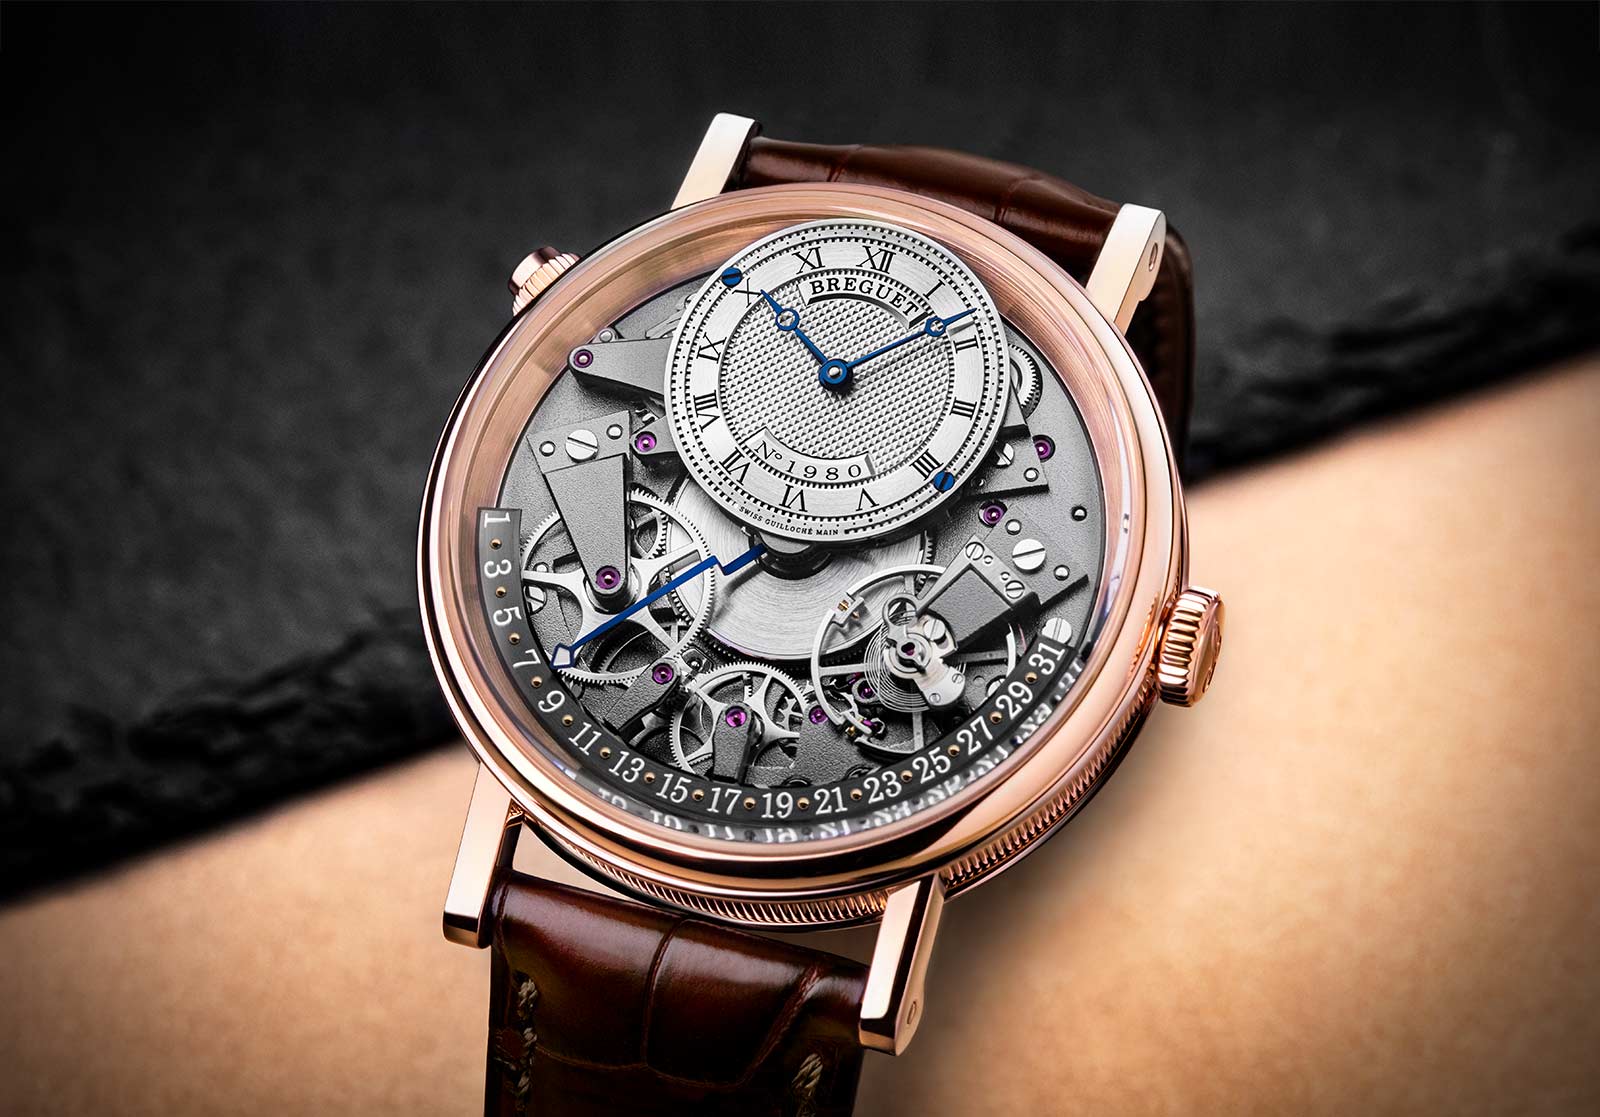 Breguet - Tradition Quantième Rétrograde 7597 | Time and Watches ...